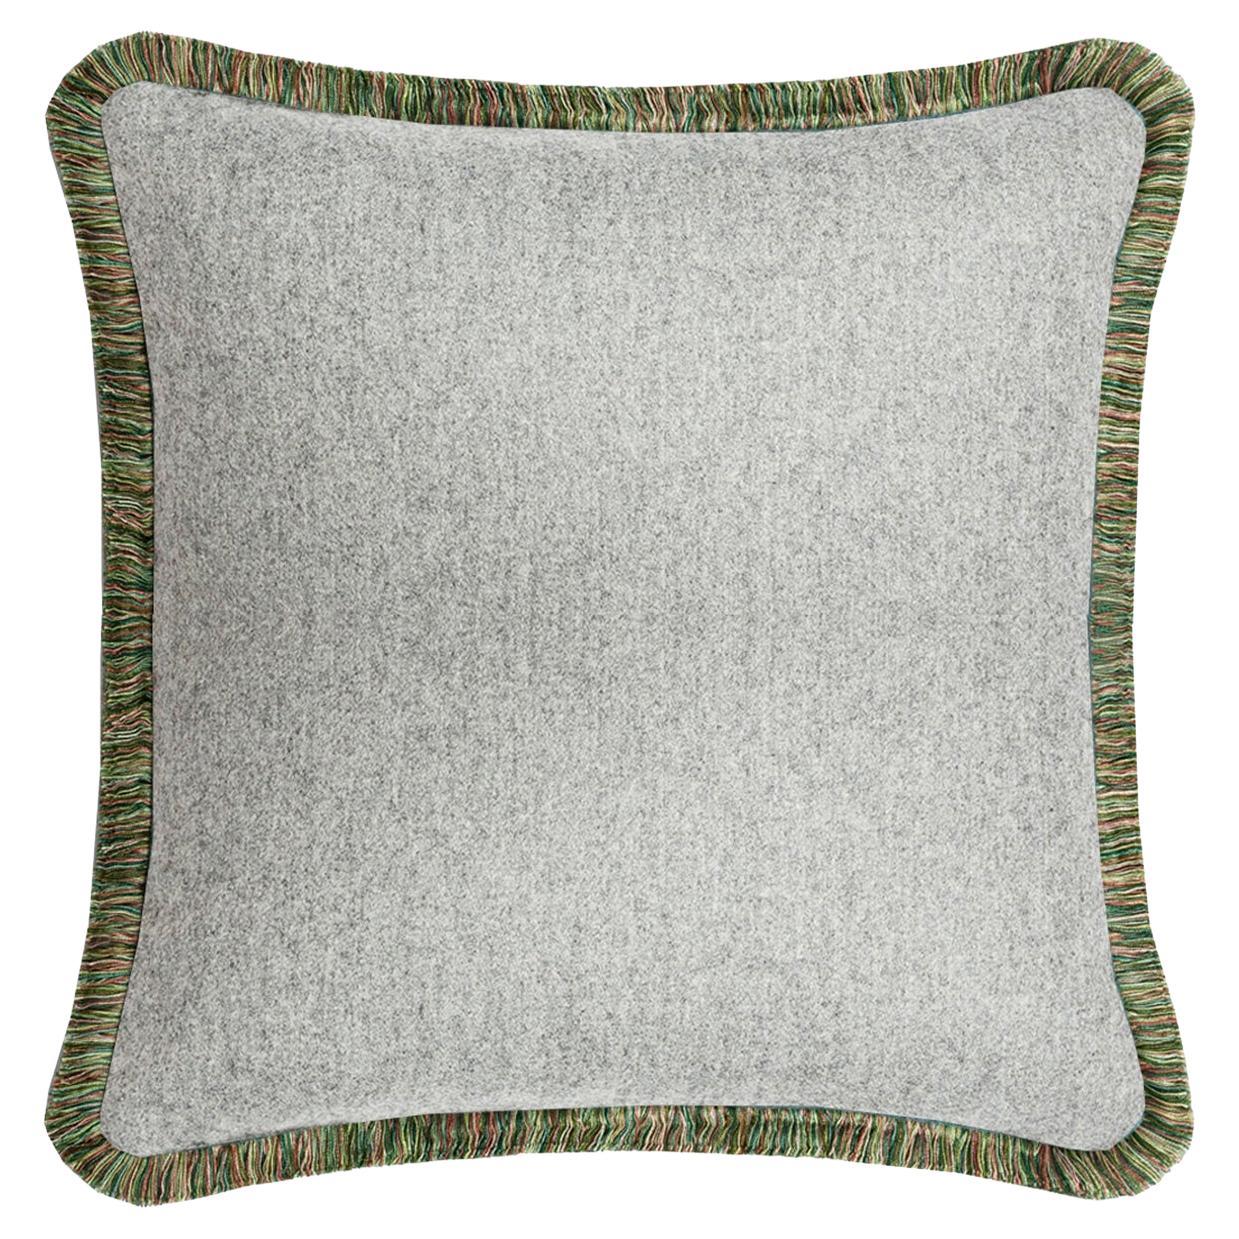 Coussin en laine Svezia gris clair avec franges multicolores Happy Pillow